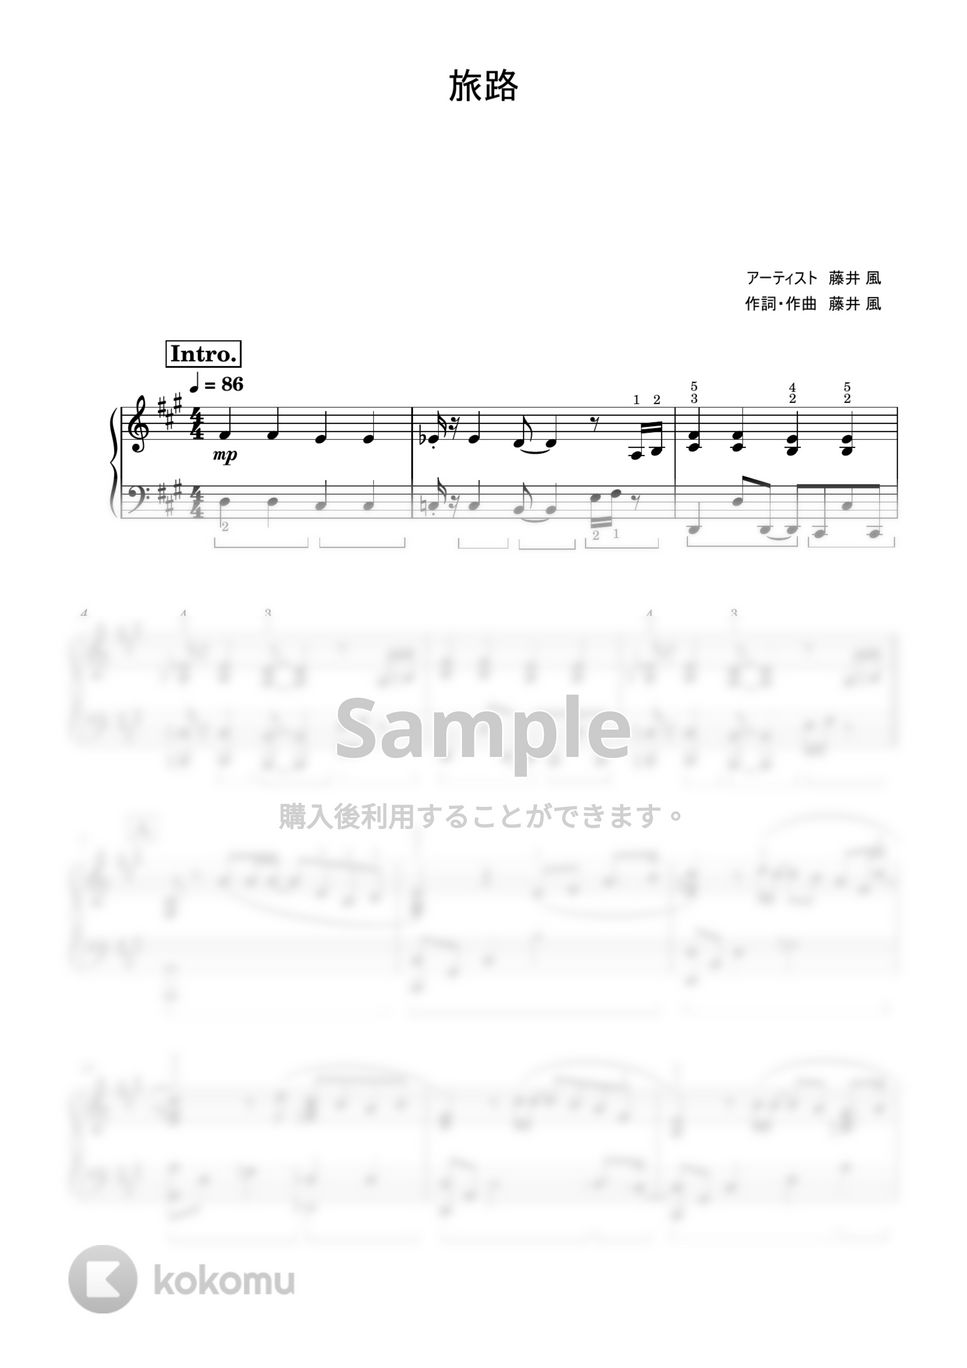 藤井風 - 旅路 (上級レベル) by Saori8Piano